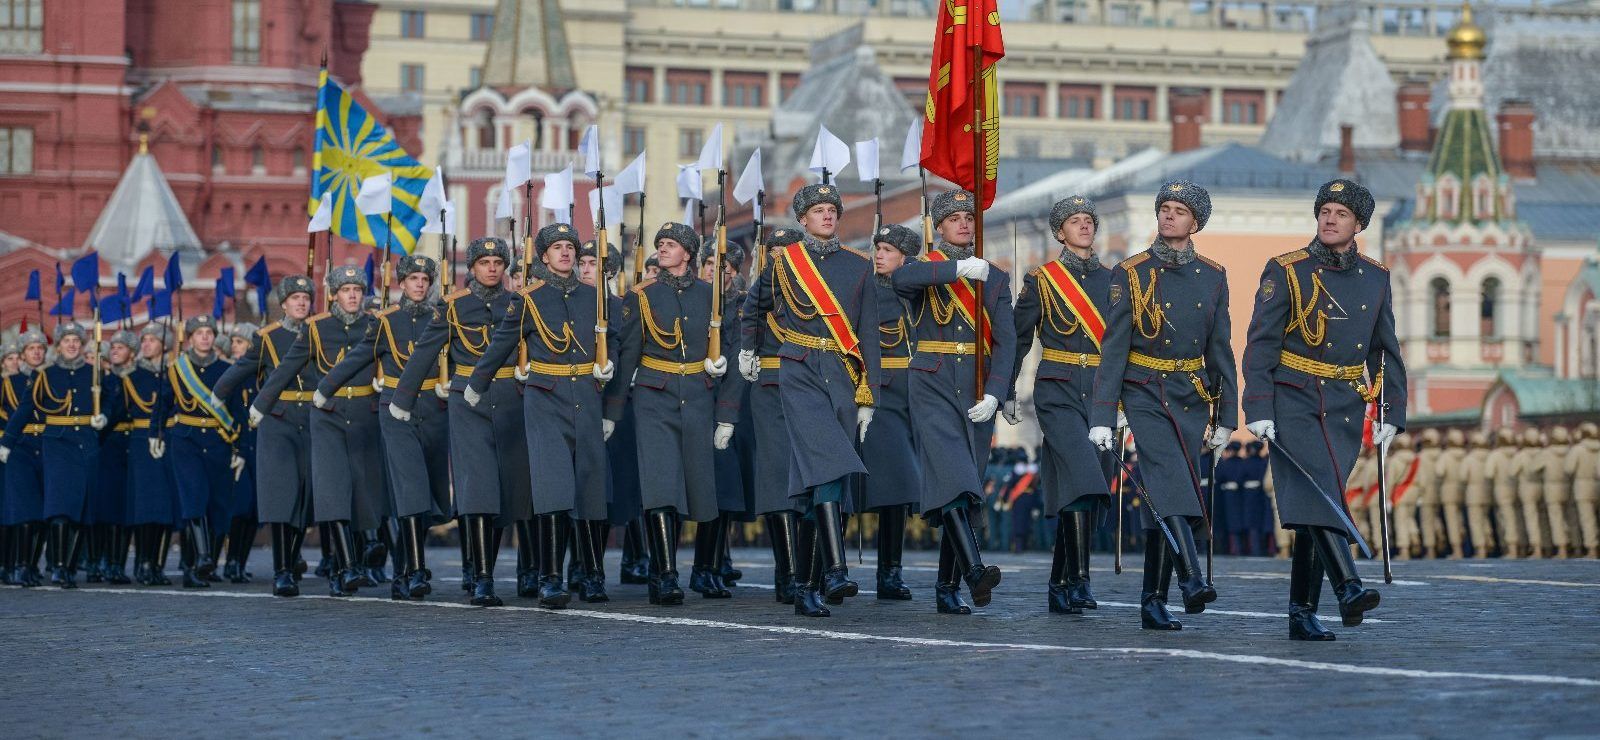 Около четырех тысяч человек примут участие в марше на Красной площади. Фото: сайт мэра Москвы